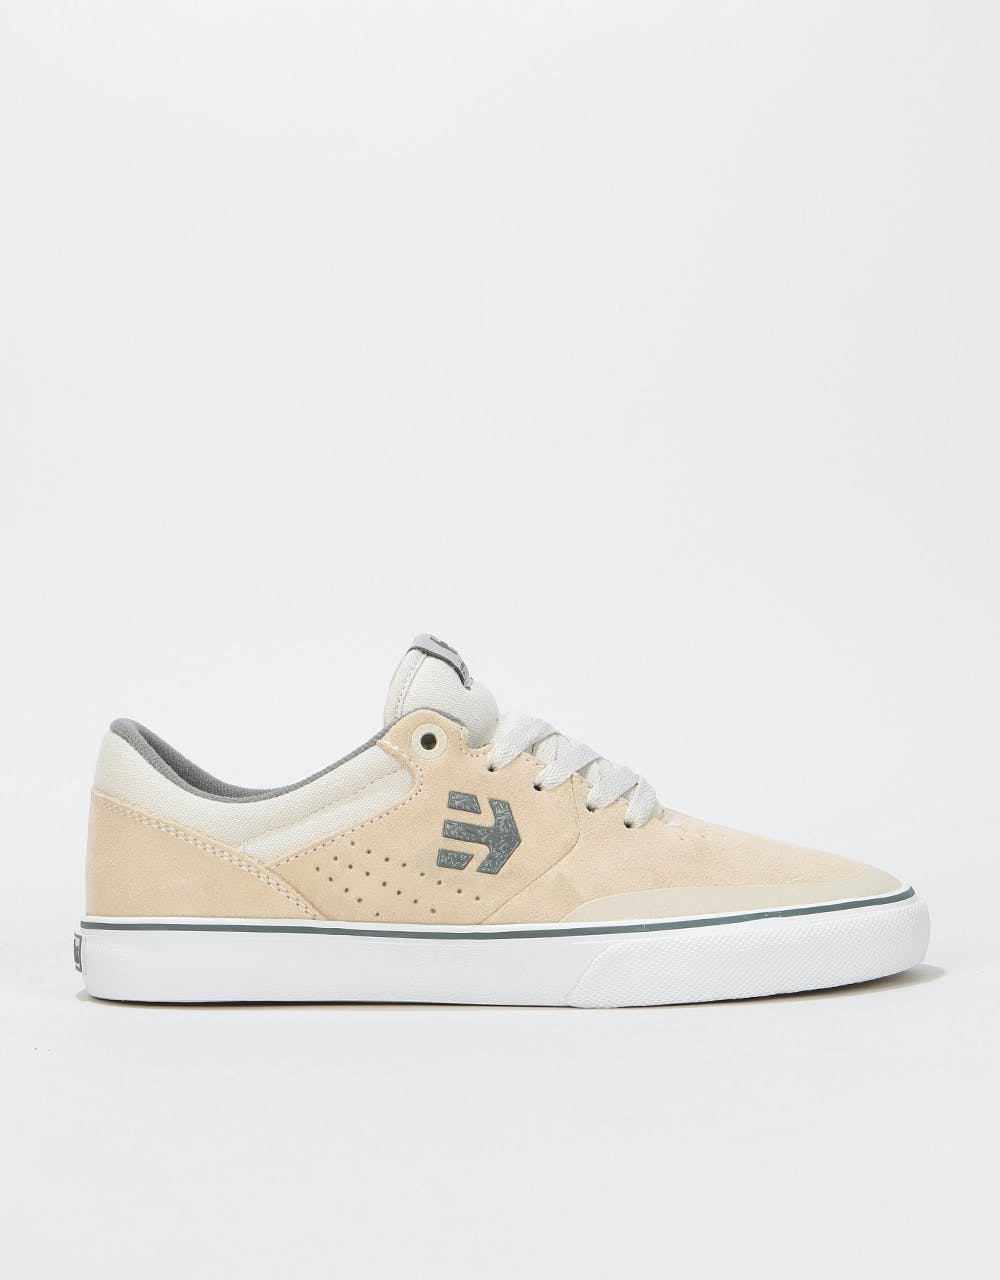 Etnies Marana Vulc Skate Shoes - White/Grey/Gum